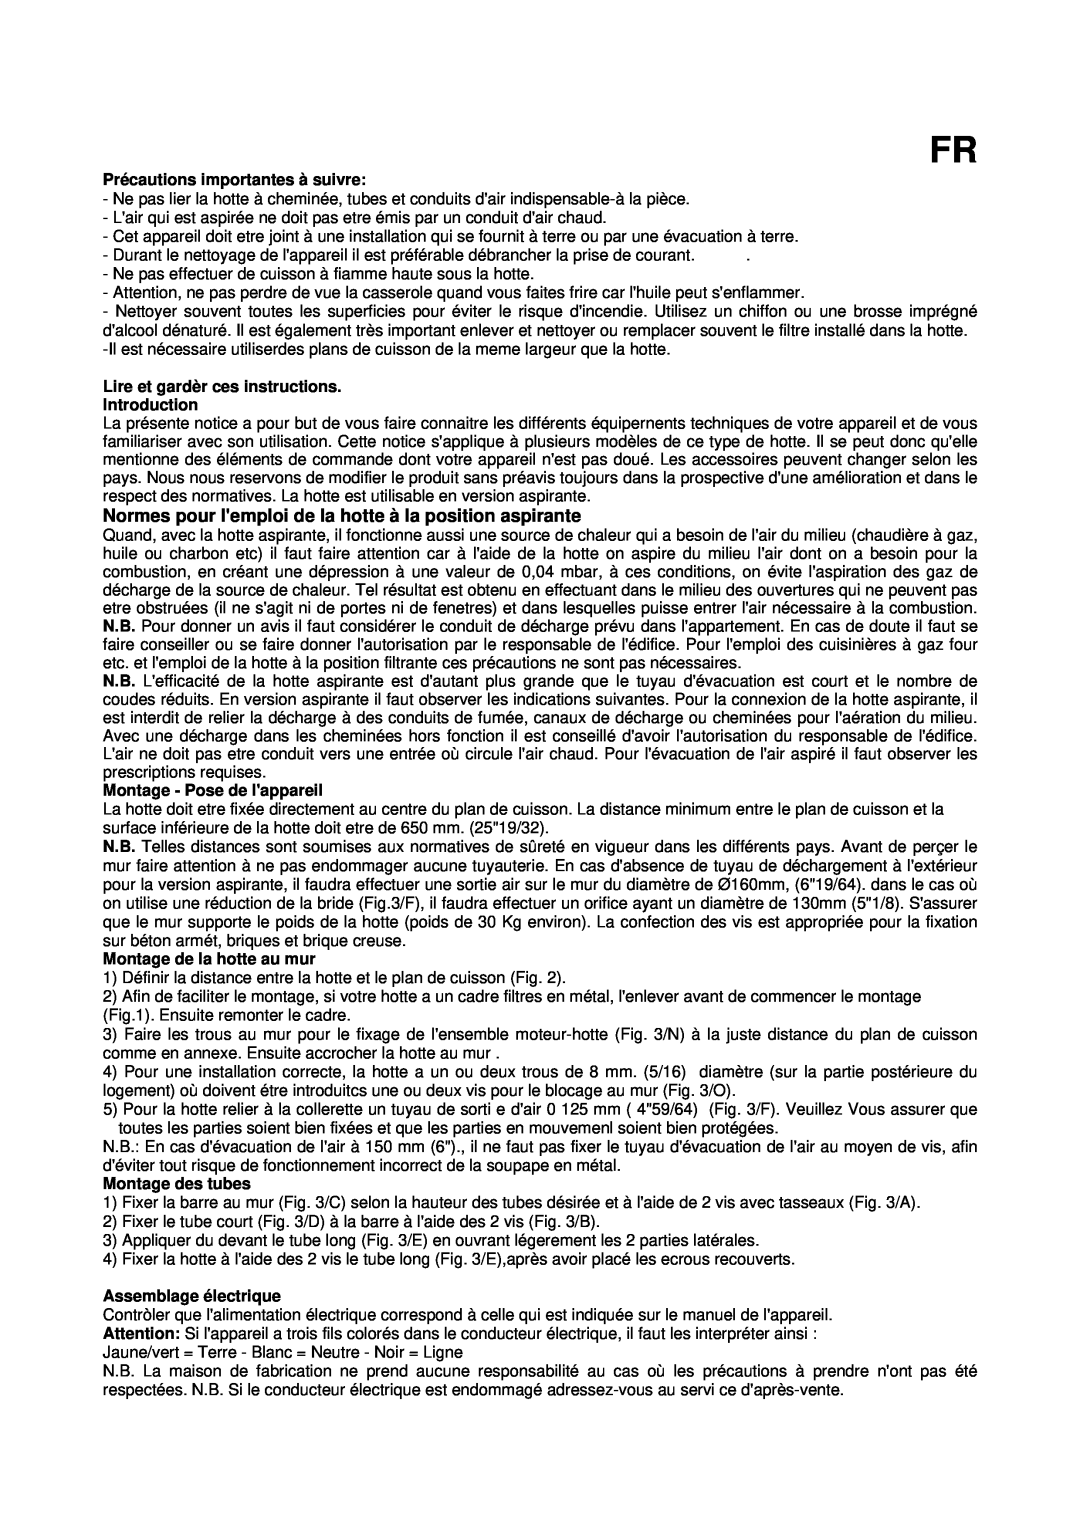 Bertazzoni K36 CON X/01 manual Normes pour lemploi de la hotte à la position aspirante, Précautions importantes à suivre 